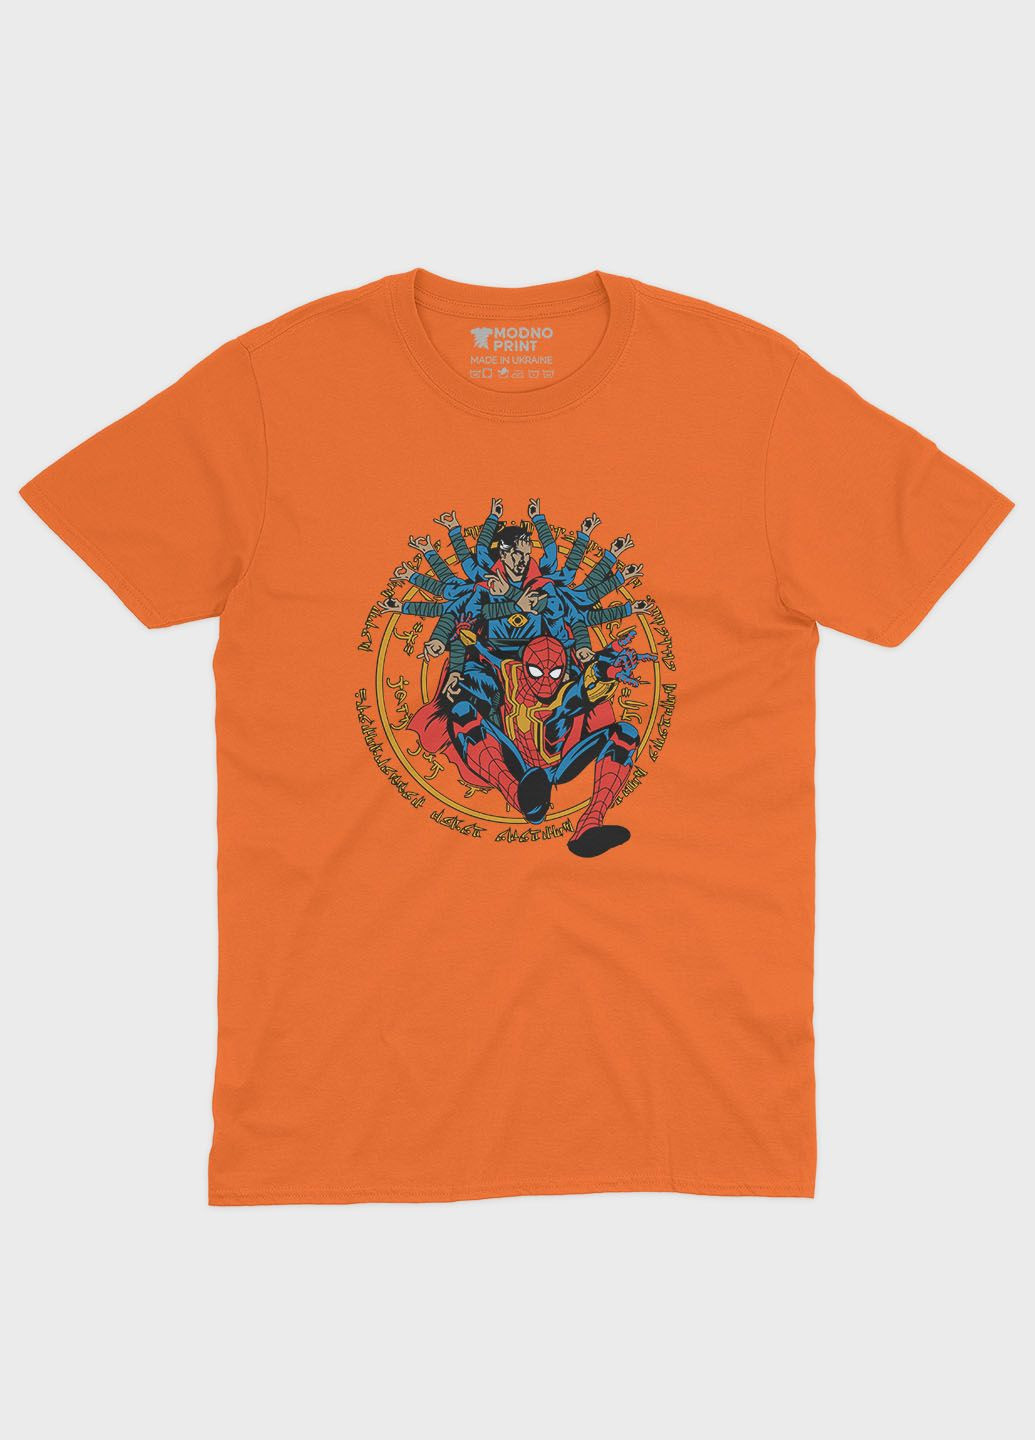 Помаранчева демісезонна футболка для хлопчика з принтом супергероя - людина-павук (ts001-1-ora-006-014-010-b) Modno